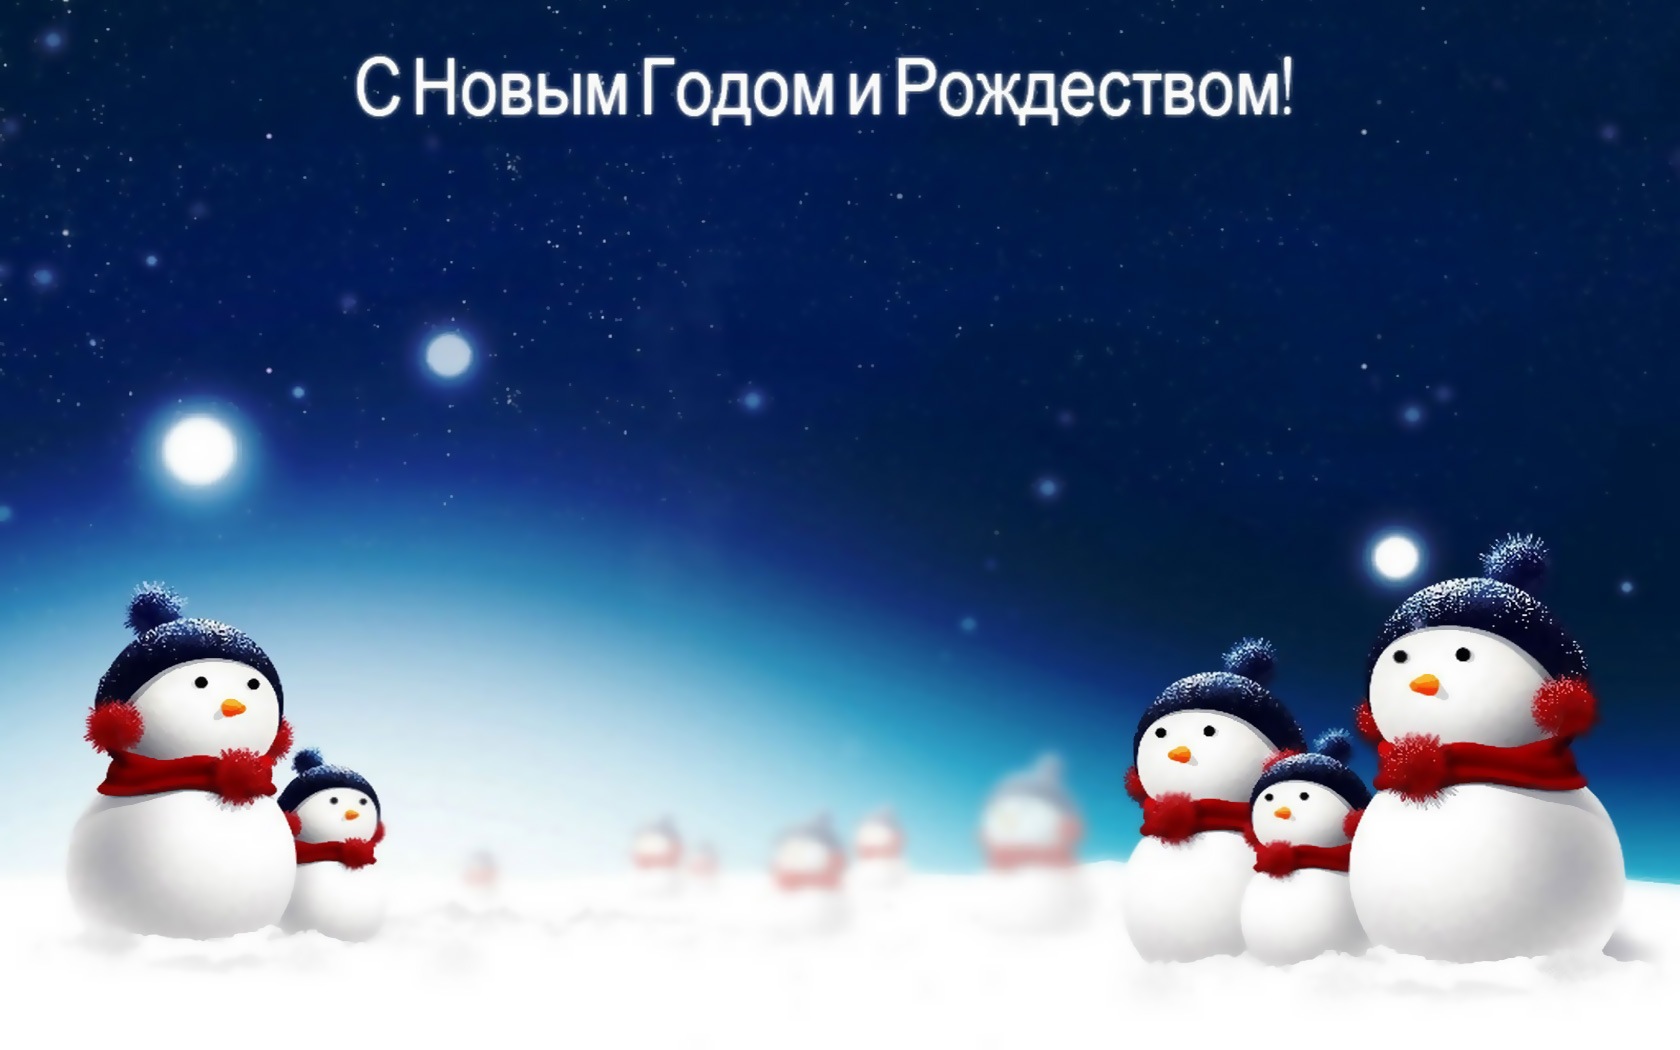 3d обои Снеговики под звездным небом (С новым годом и рождеством)  новый год # 65537